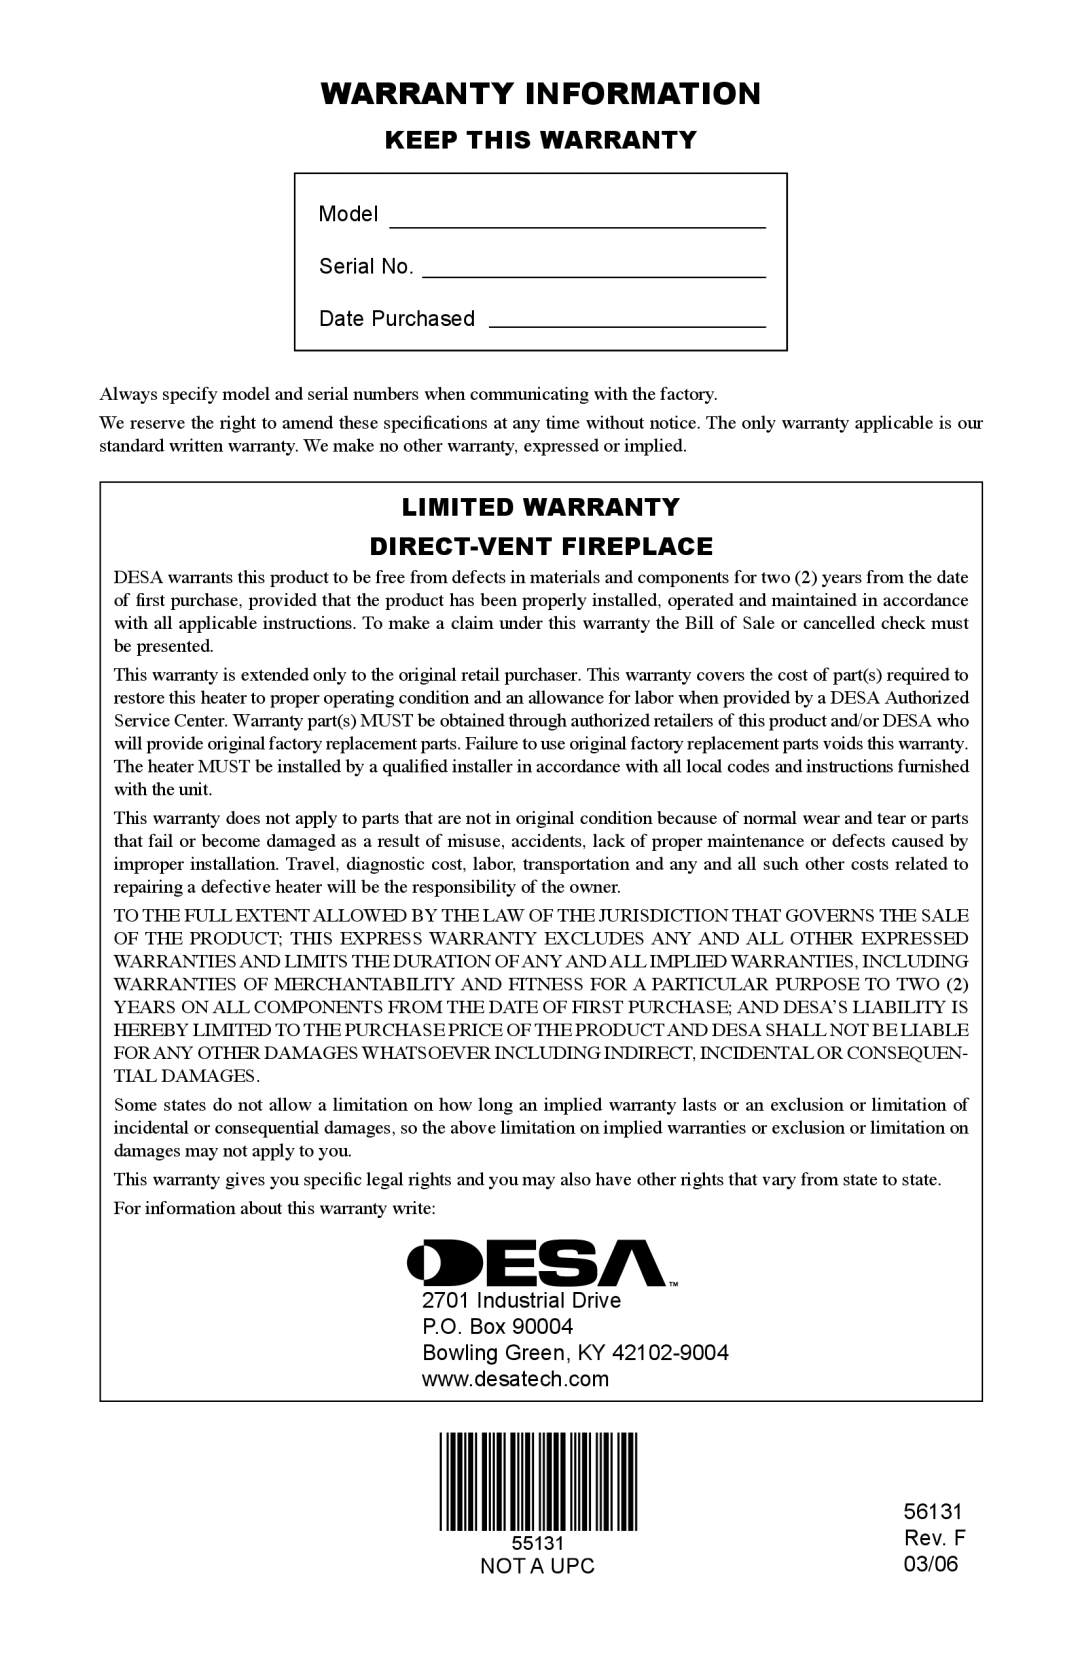 Desa (V)DVF36, TSTPA-A, TSTEA-A, TSTPEA-A Warranty Information, Keep This Warranty, Limited Warranty Direct-Ventfireplace 